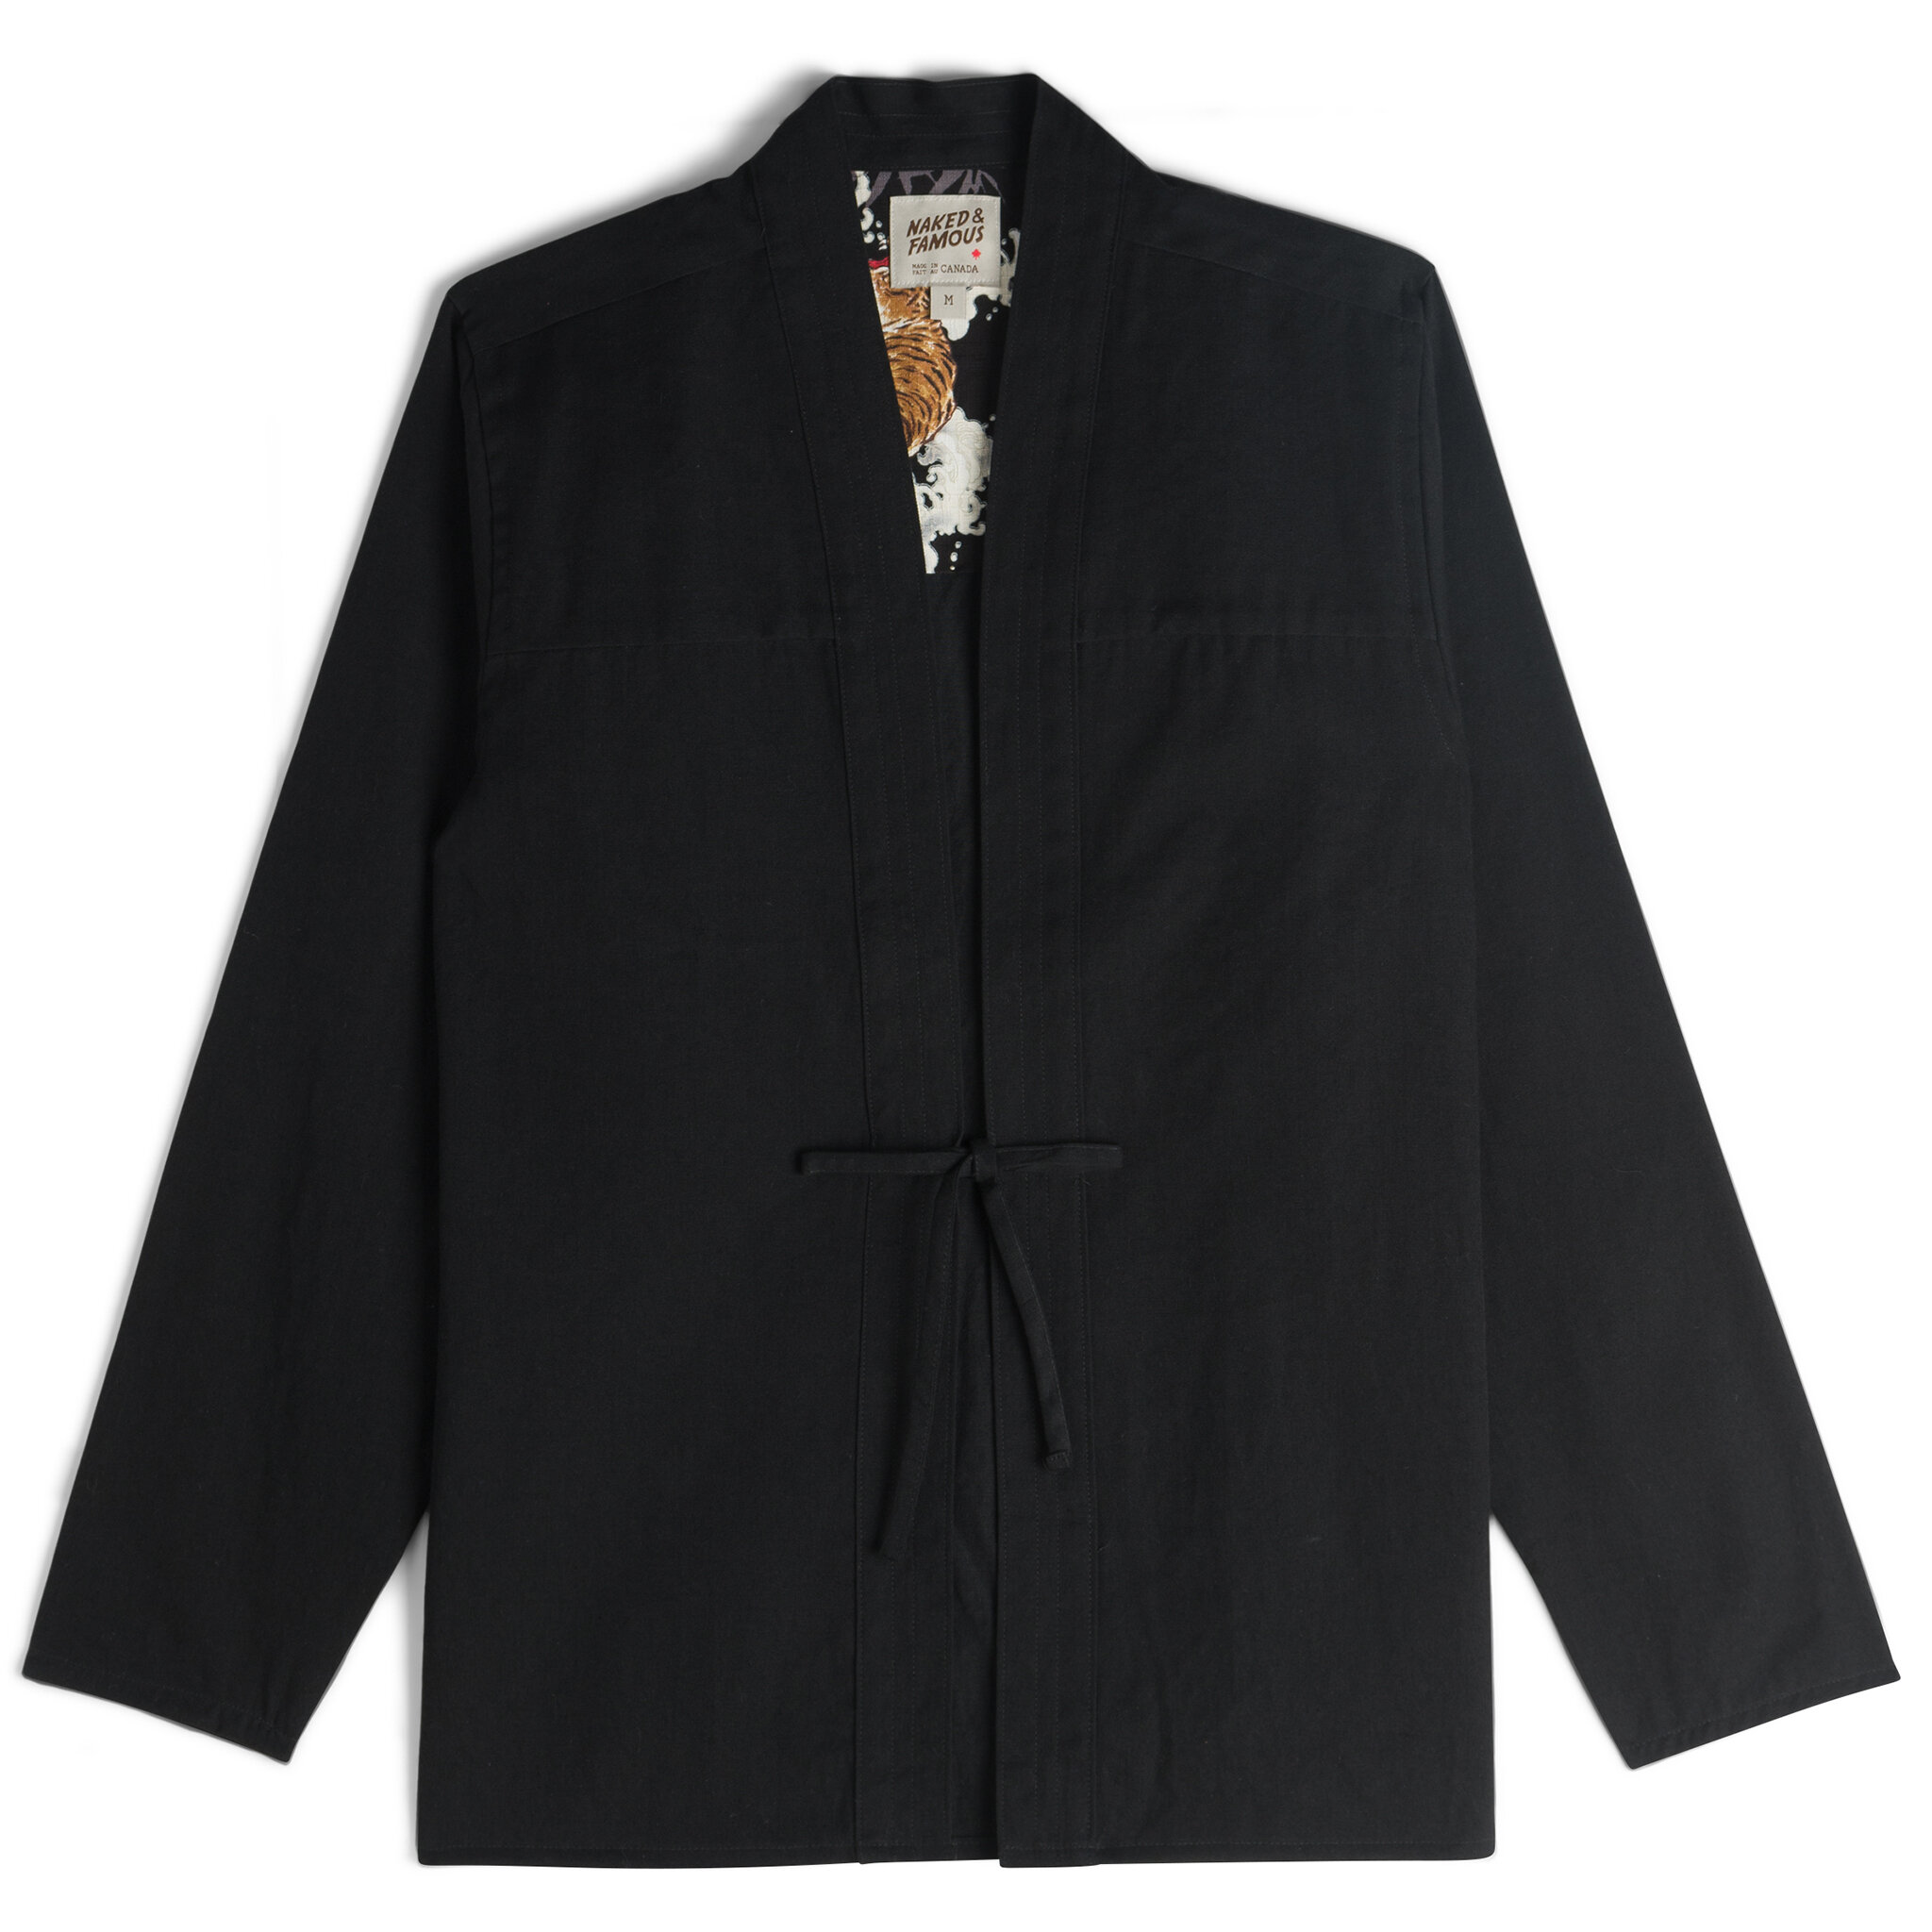  Kimono Shirt - Black Short Slub Denim - flat front 